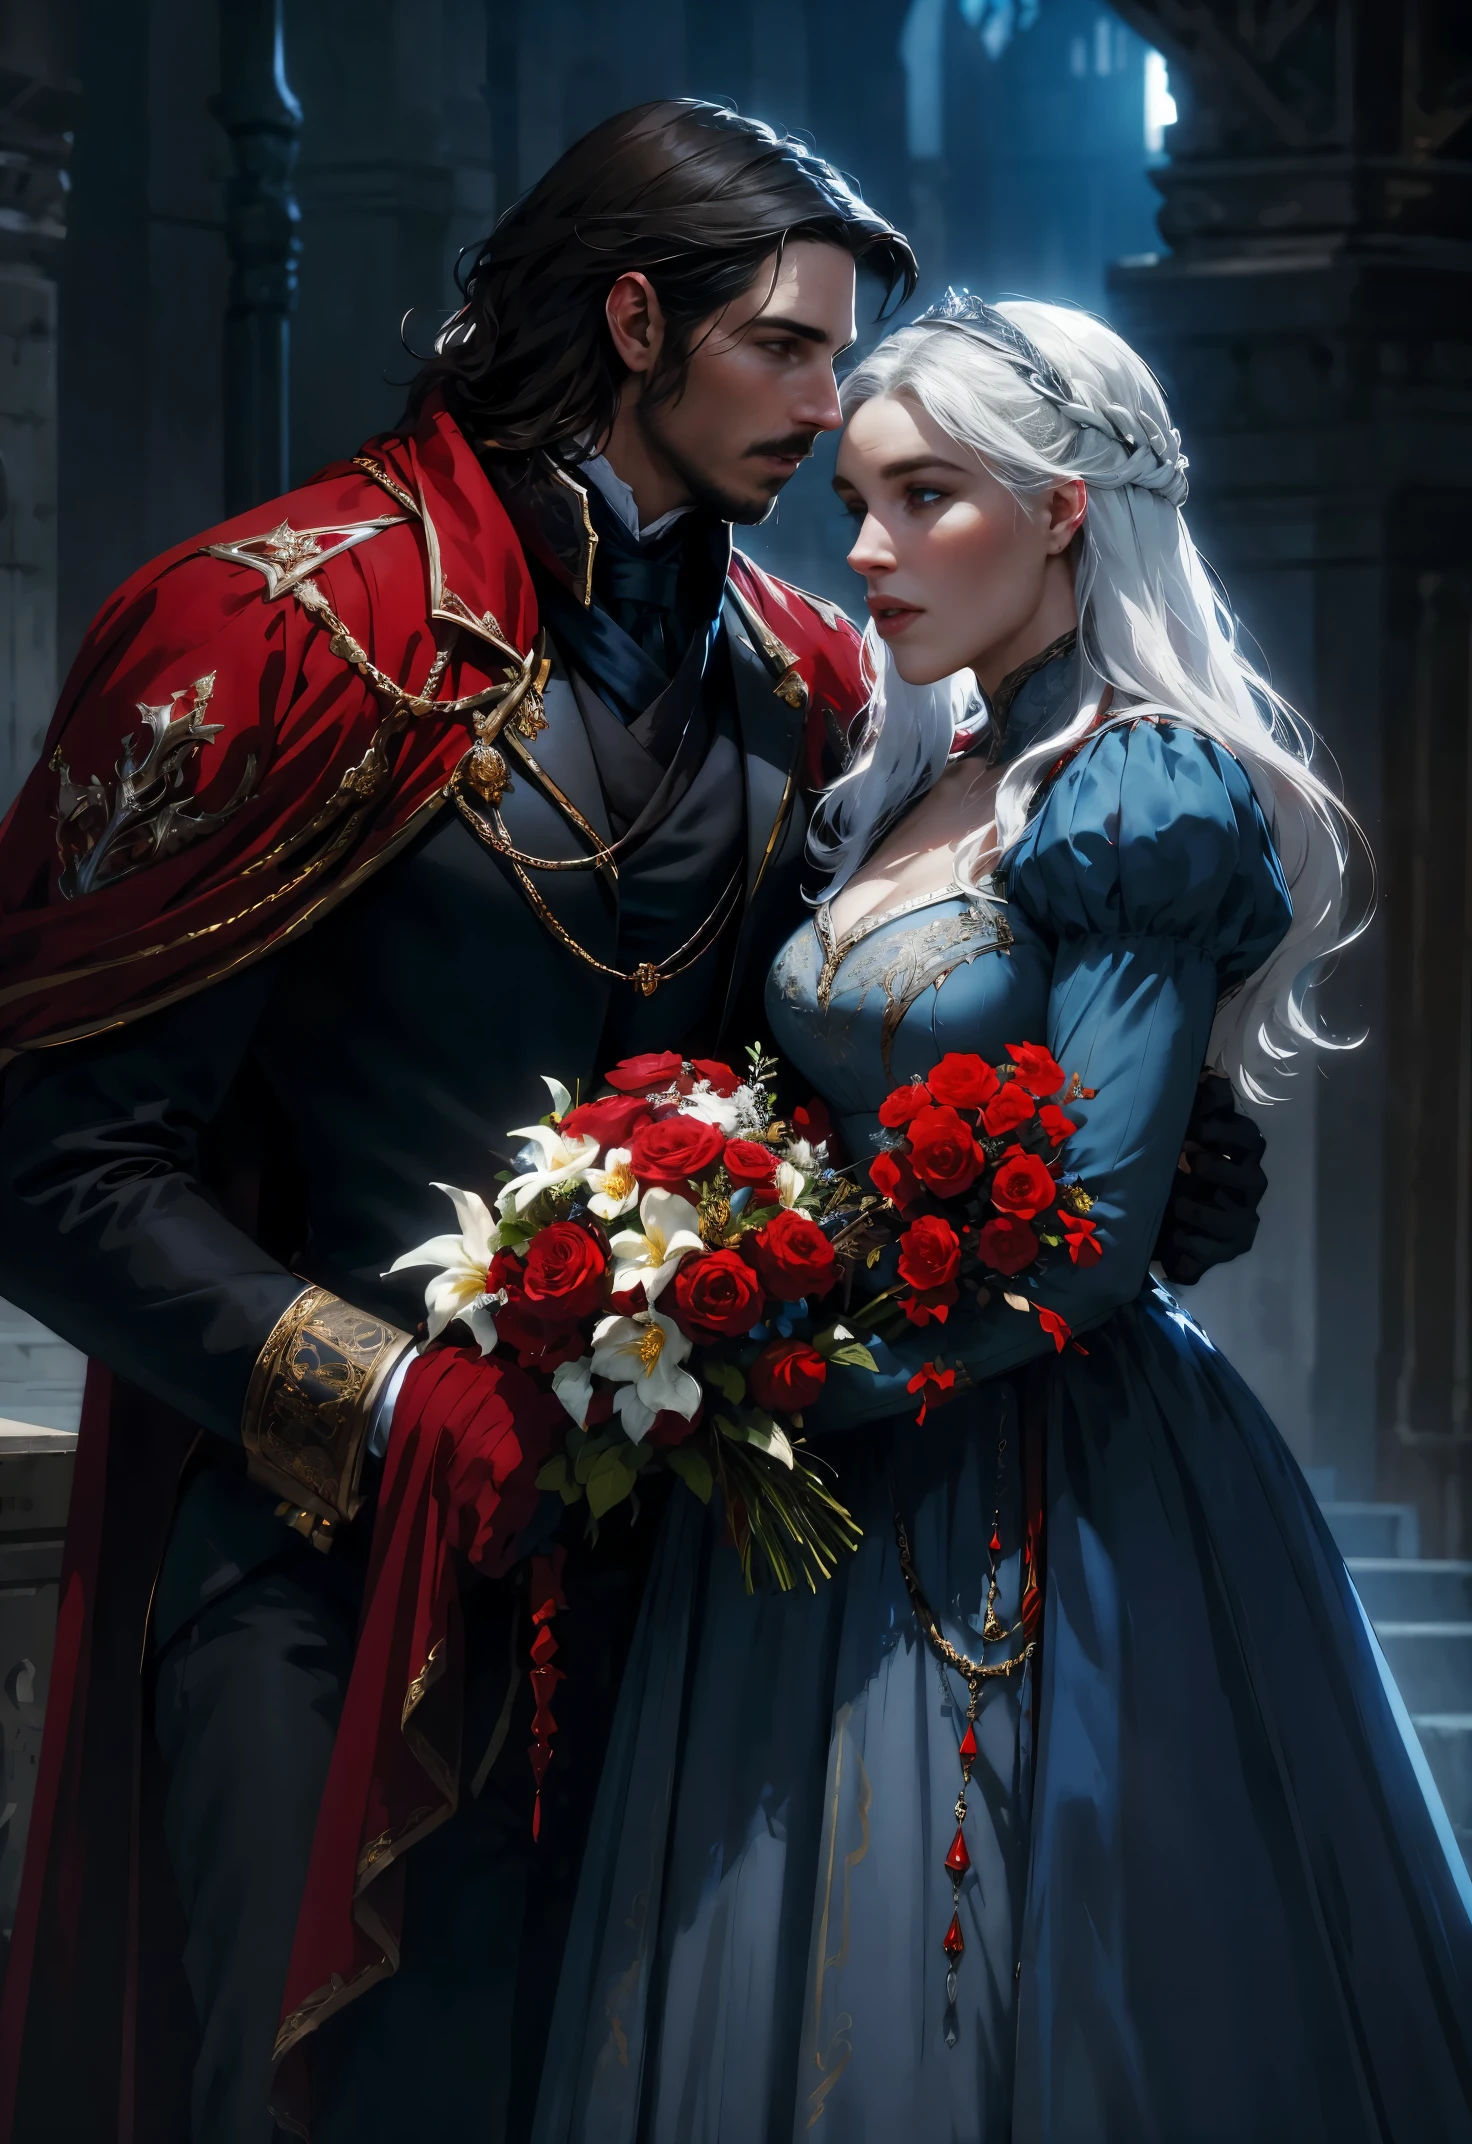 خيالي, أحمر, أسود, نغمات زرقاء وبيضاء, زهور, رجل وامرأة تقبيل بعضهما البعض, رجل يشبه كريستيان بيل, بالزي الملكي في القرن التاسع عشر, امرأة تشبه دينيريس, في ثوب ملكي من القرن التاسع عشر, عالية الدقة